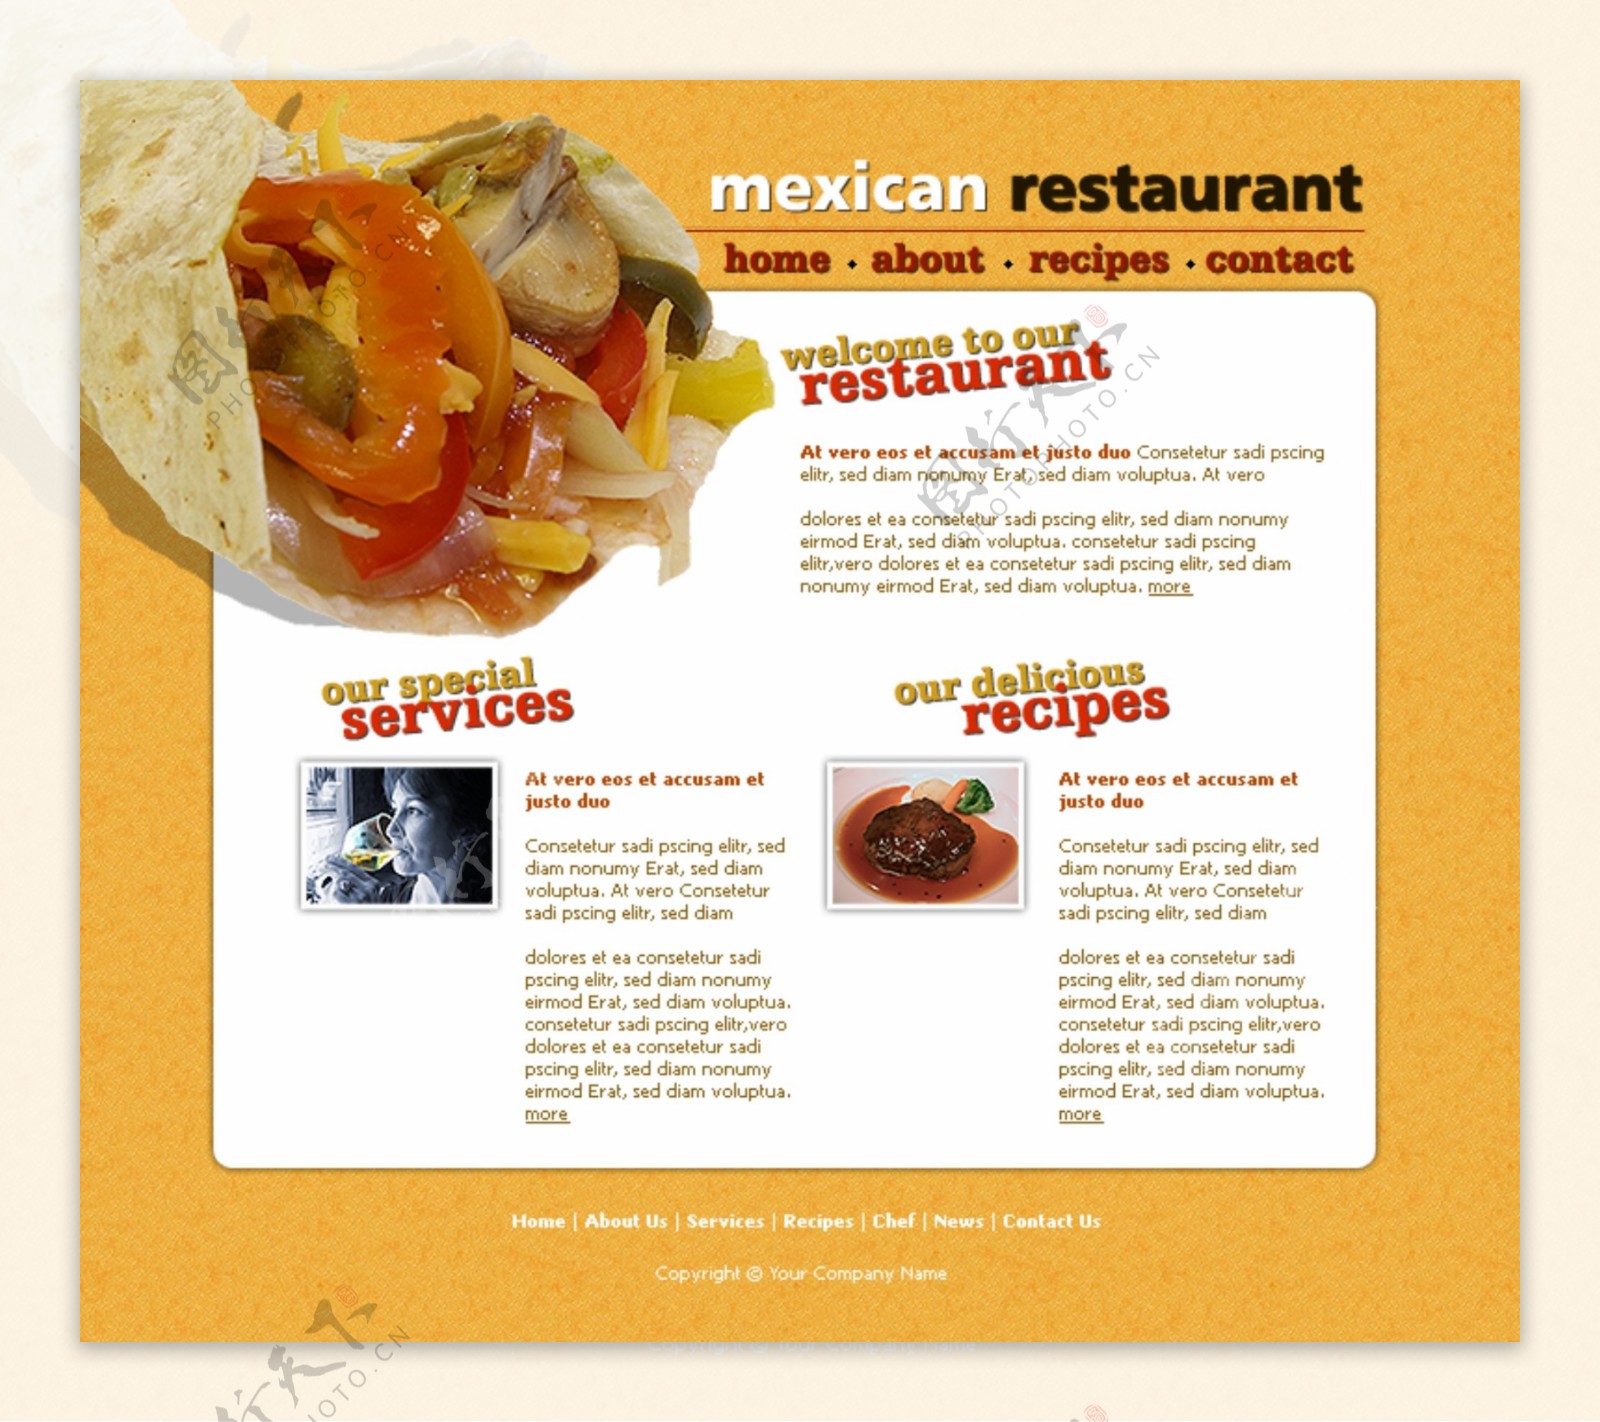 墨西哥饮食店网页模板